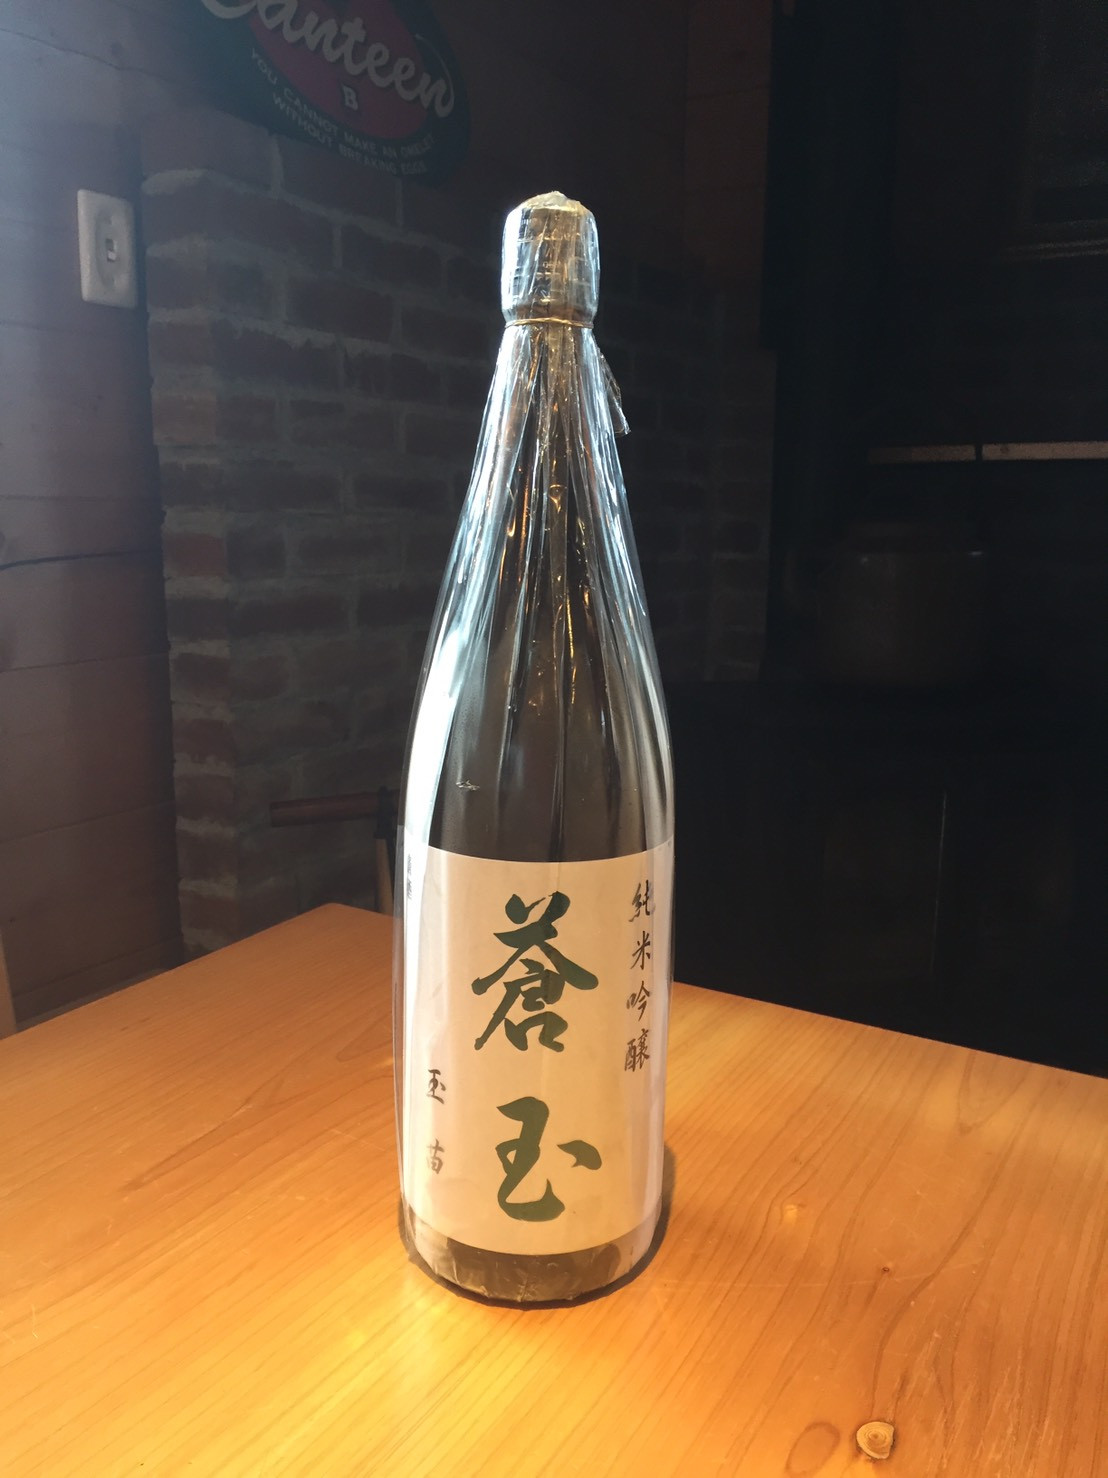 花邑で有名な両関酒造の純米吟醸酒です🍶